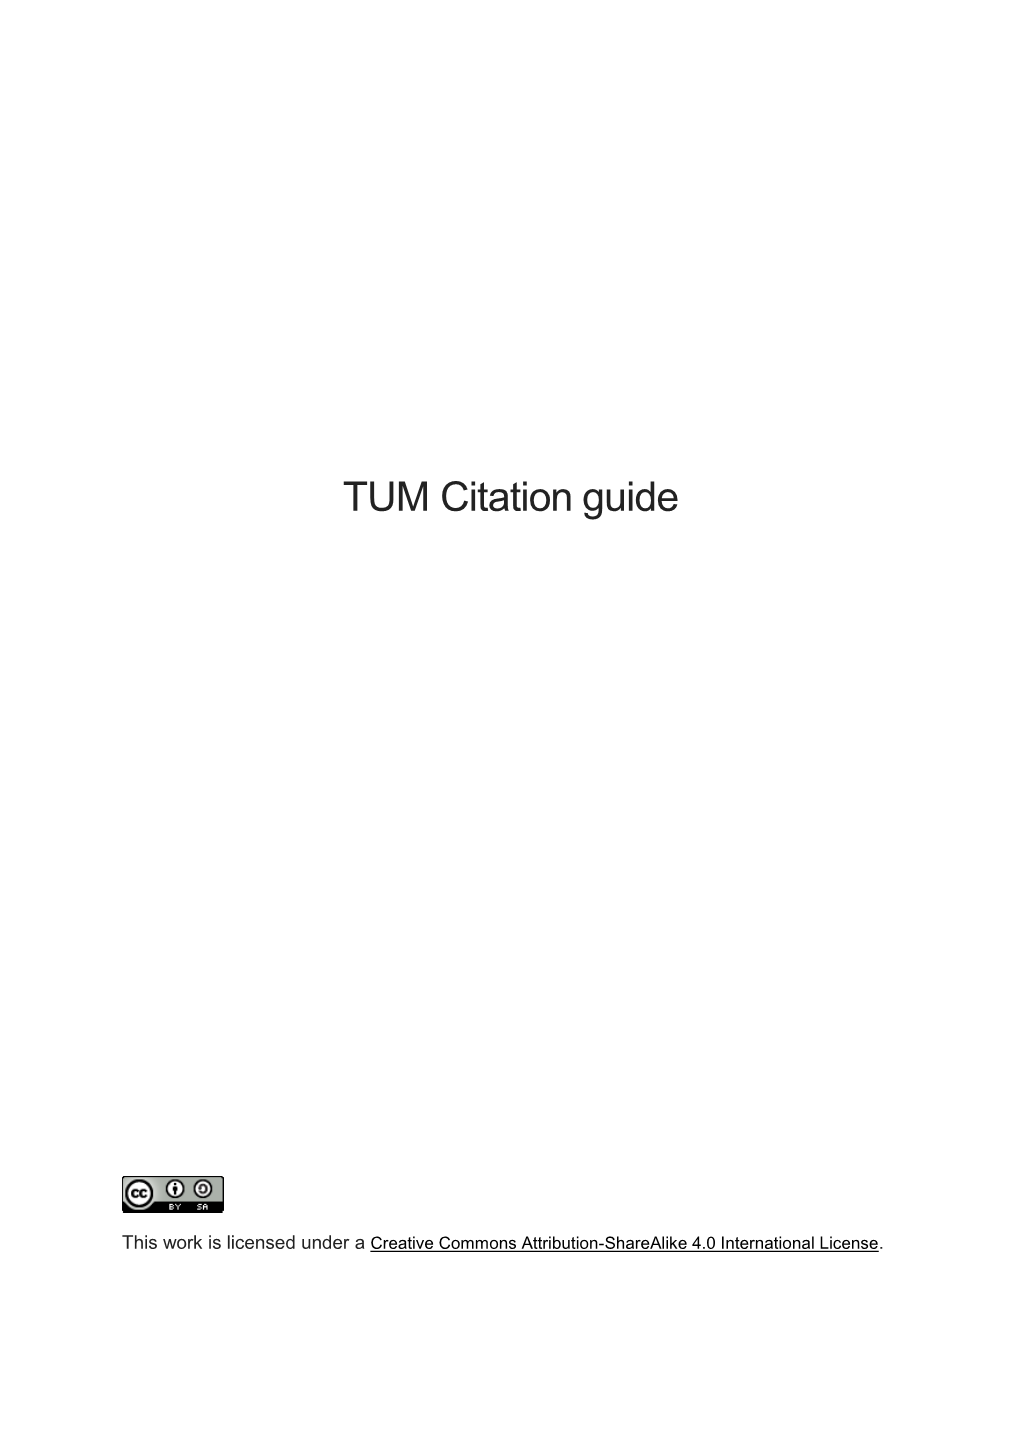 TUM Citation Guide